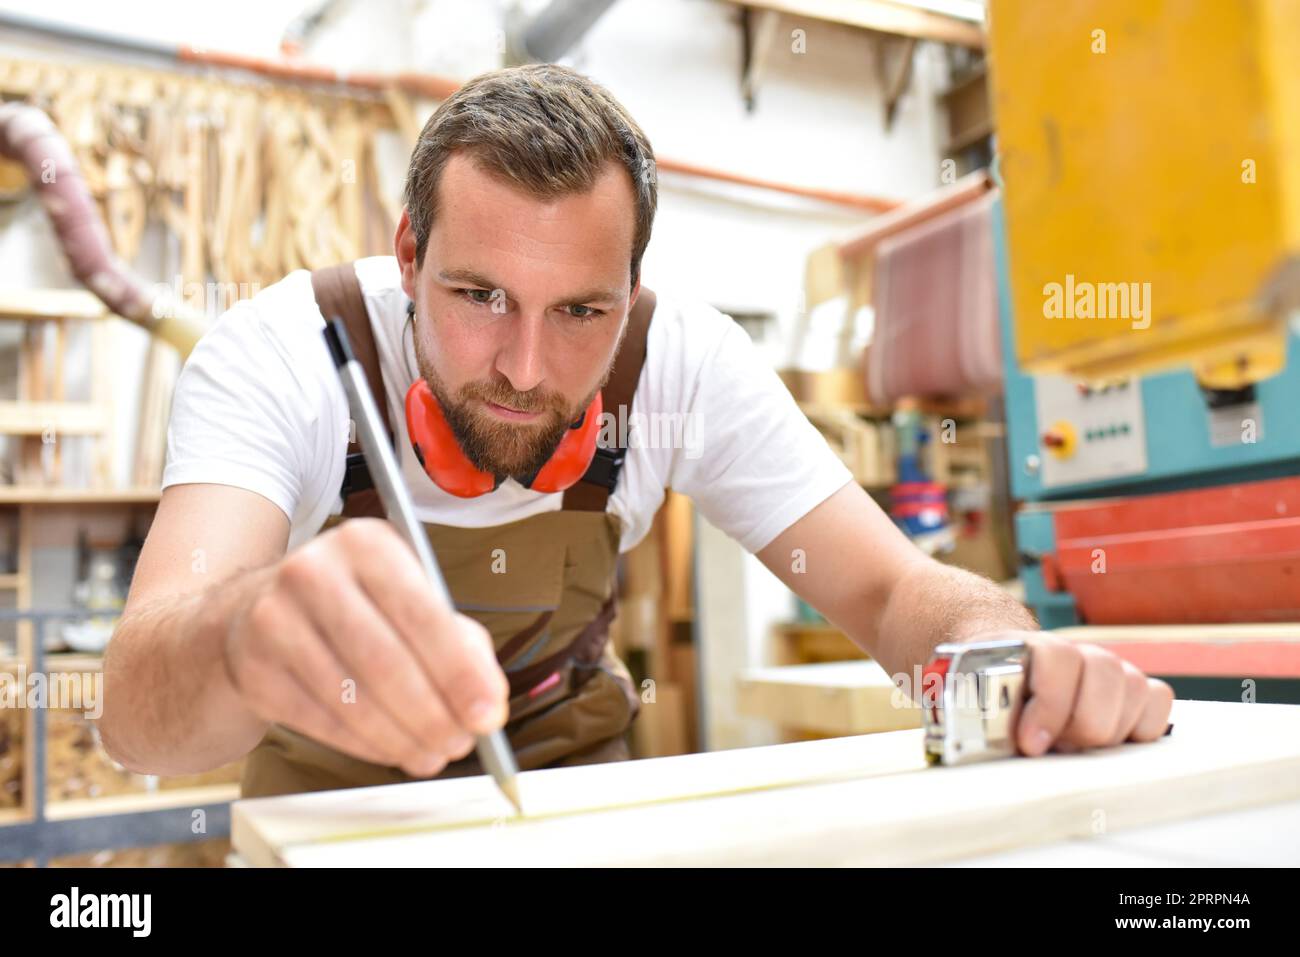 Freundlich Tischler mit Gehörschutz und Arbeitskleidung arbeiten an einer Säge in der Werkstatt Stockfoto